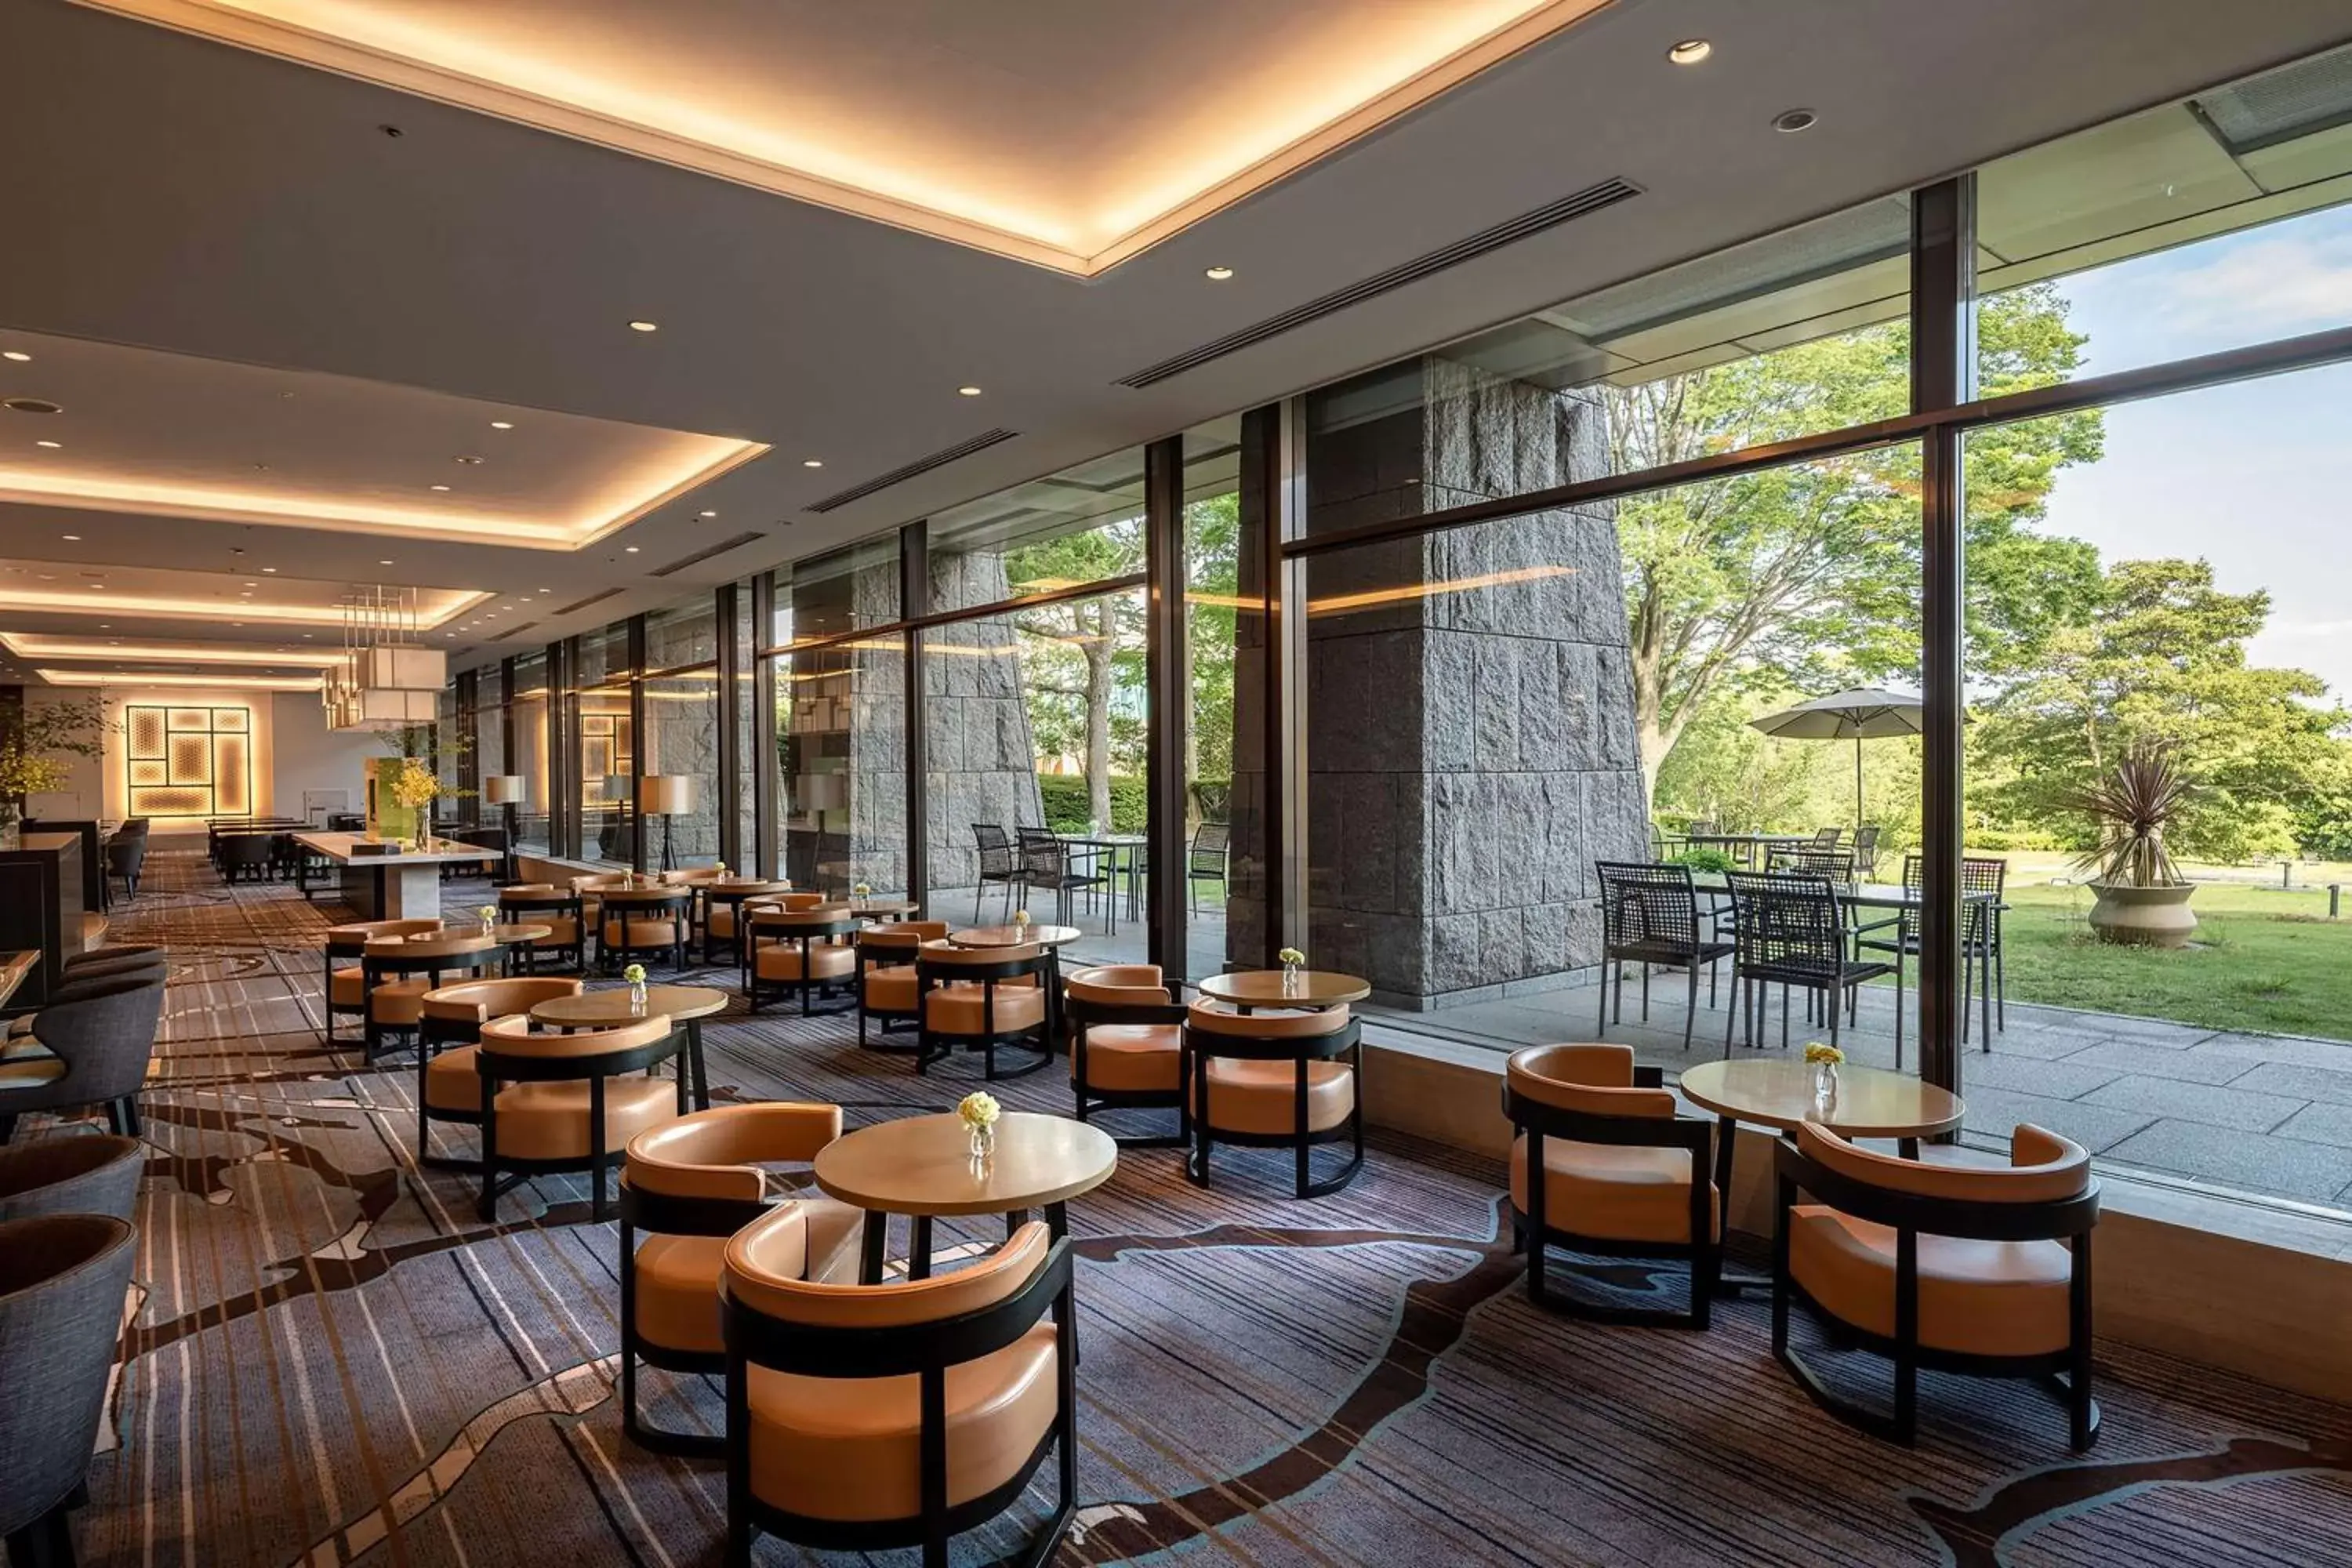 Restaurant/places to eat, Lounge/Bar in Hilton Odawara Resort & Spa